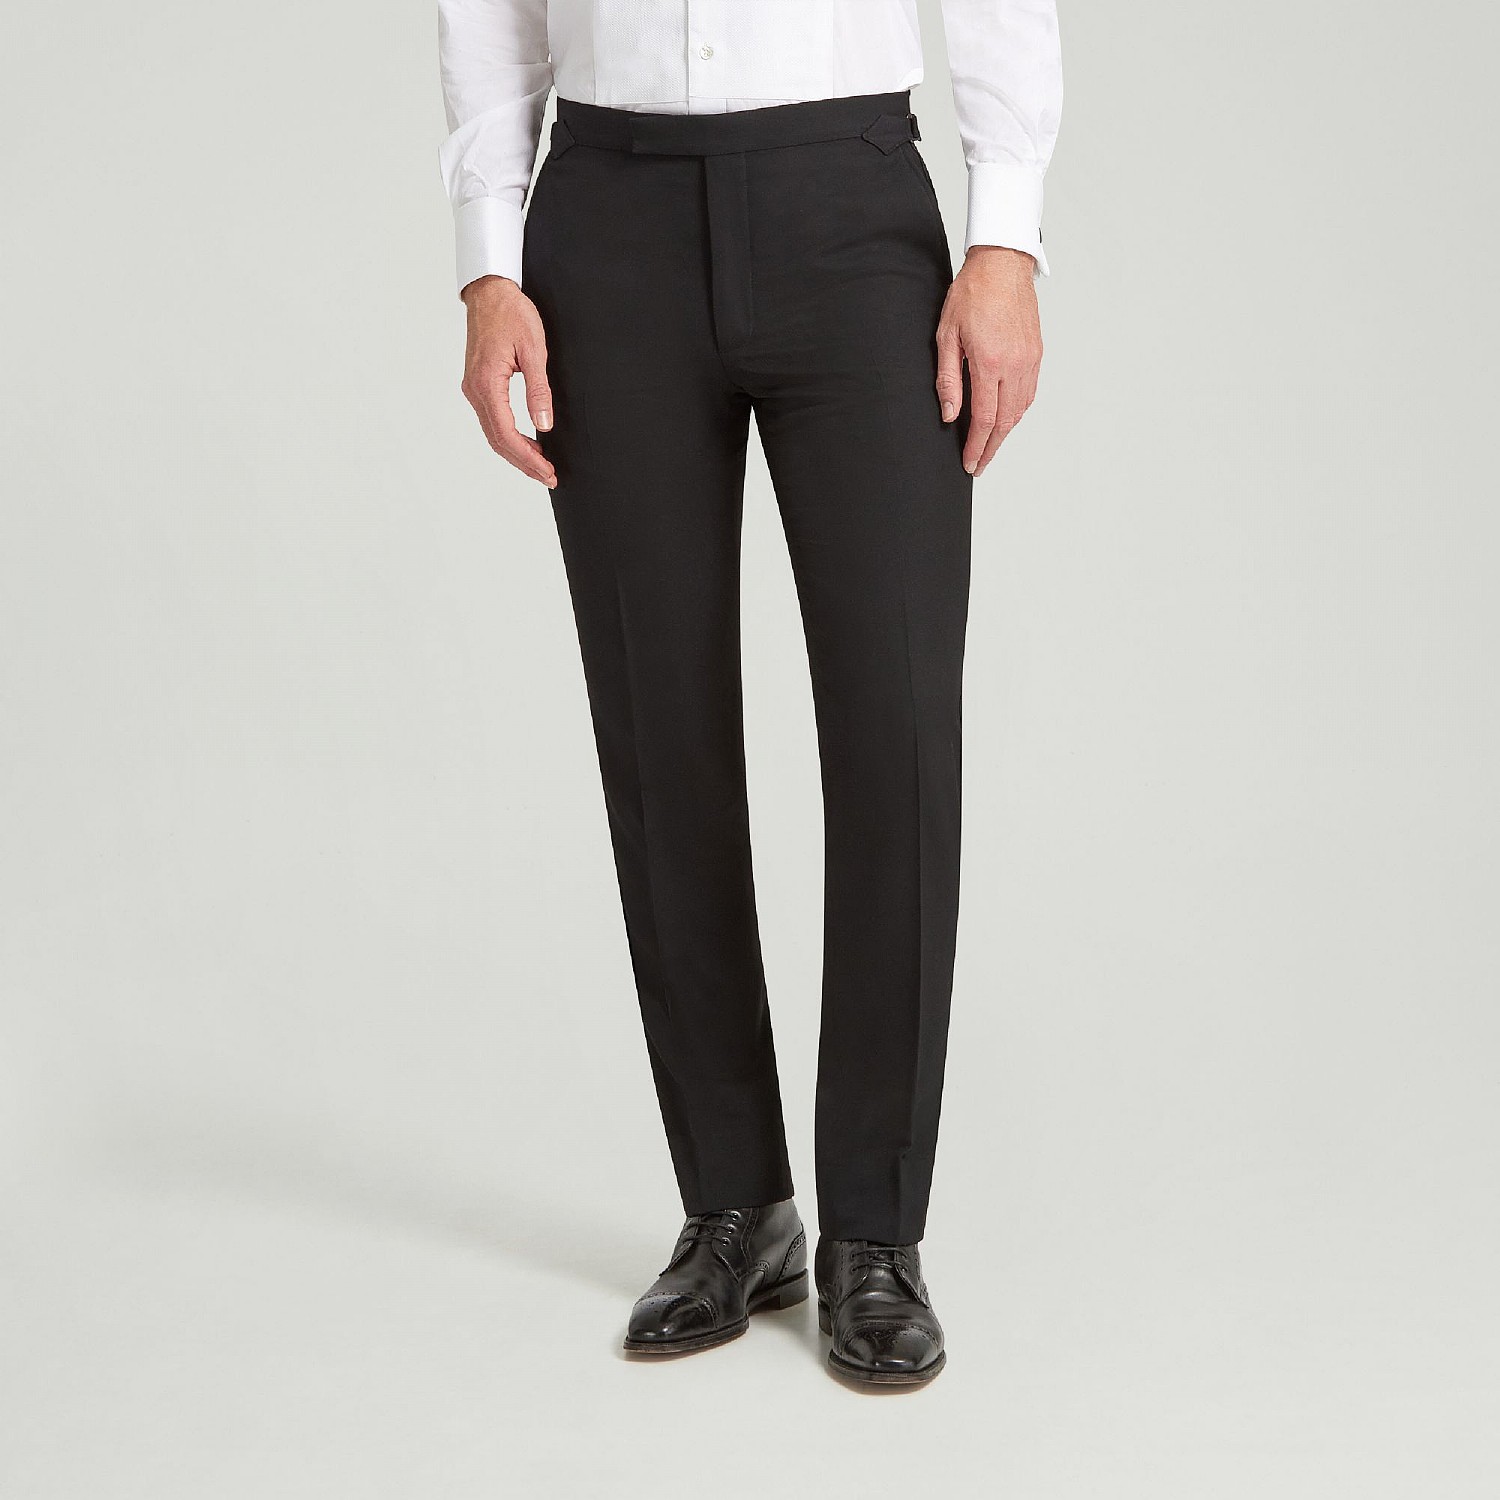 BOSS Ledan Tuxedo Trousers Black at CareOfCarl.com